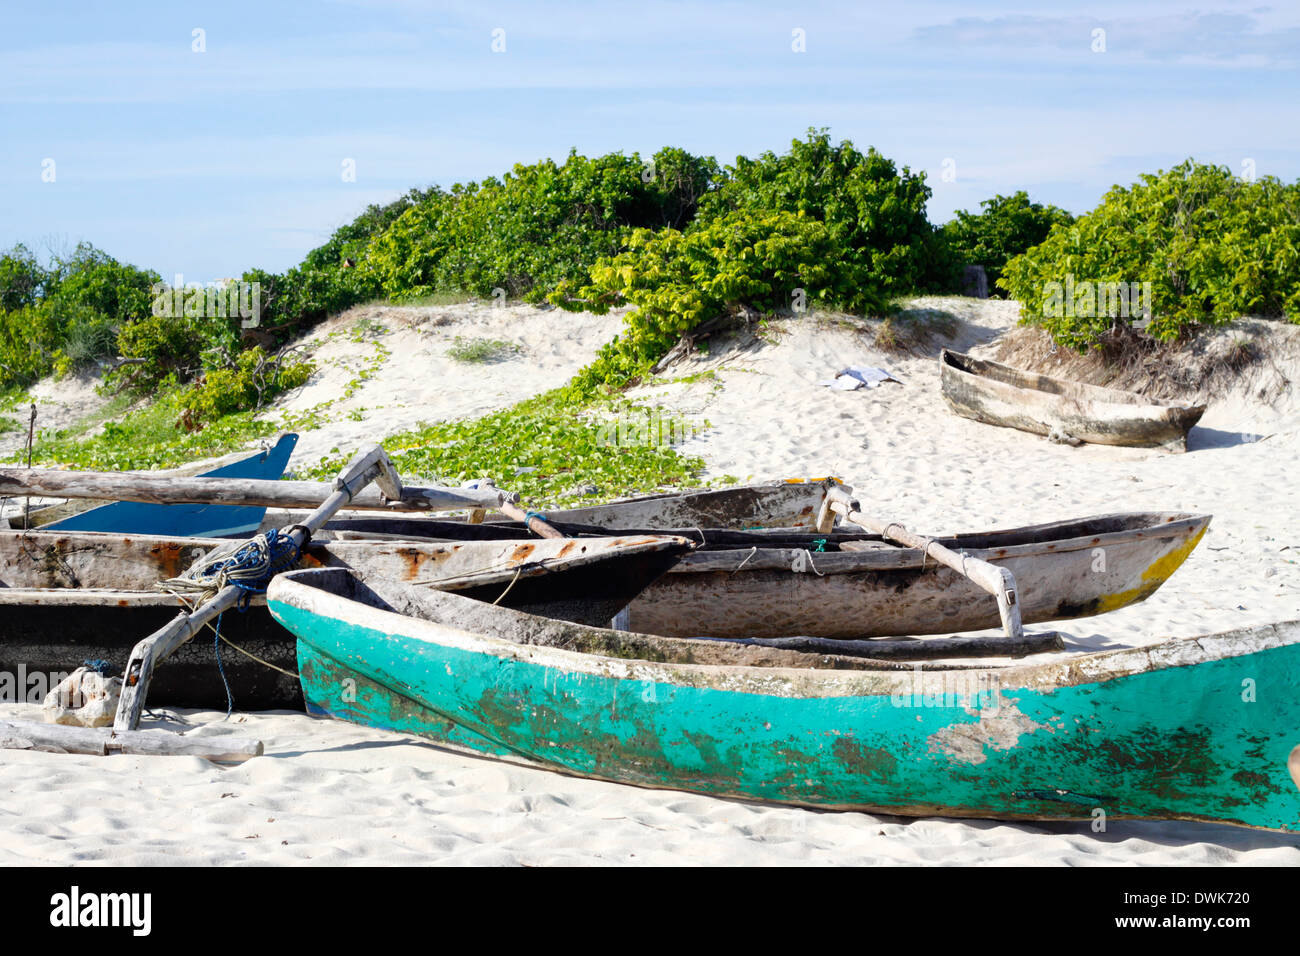 Handmade canoas tradicionales de los pescadores locales, a la izquierda en la playa, en la isla de Rolas. Quirimbas, Mozambique. Foto de stock